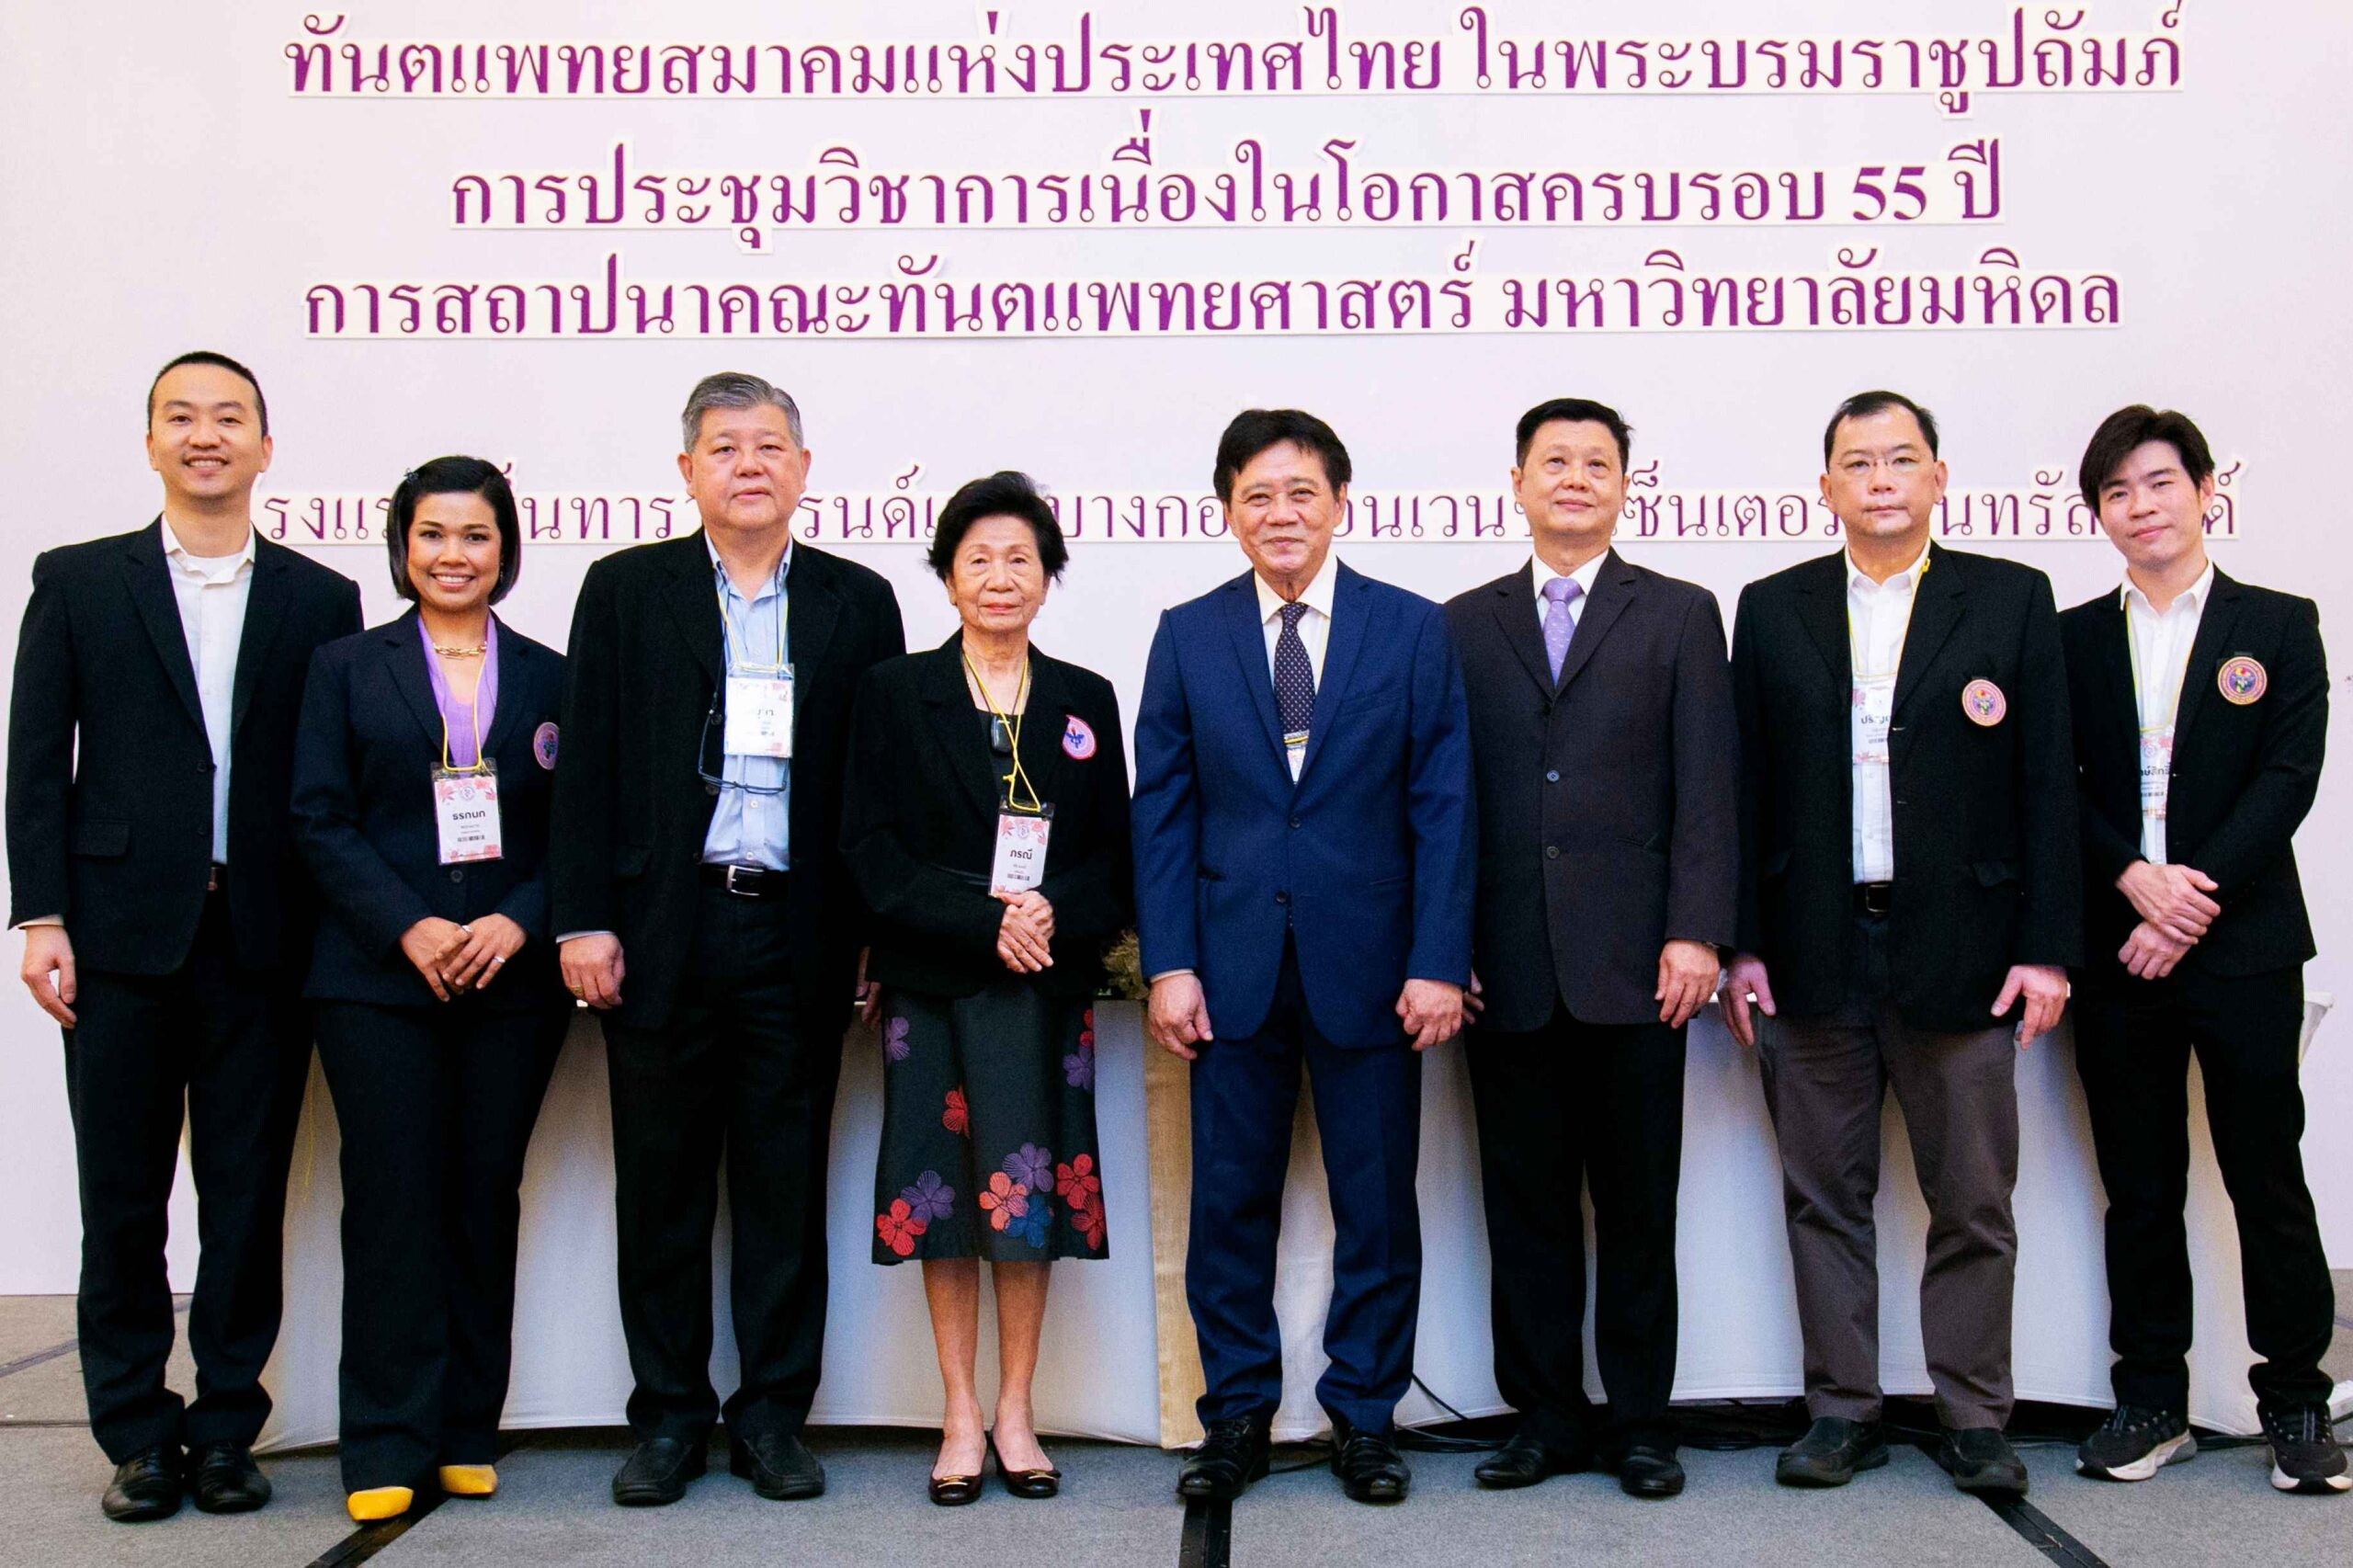 ประชุมวิชาการทันตแพทยสมาคมแห่งประเทศไทย ในพระบรมราชูปถัมภ์ครั้งที่ 115 (1/2566) ณ โรงแรมเซ็นทาราแกรนด์ เซ็นทรัลเวิลด์